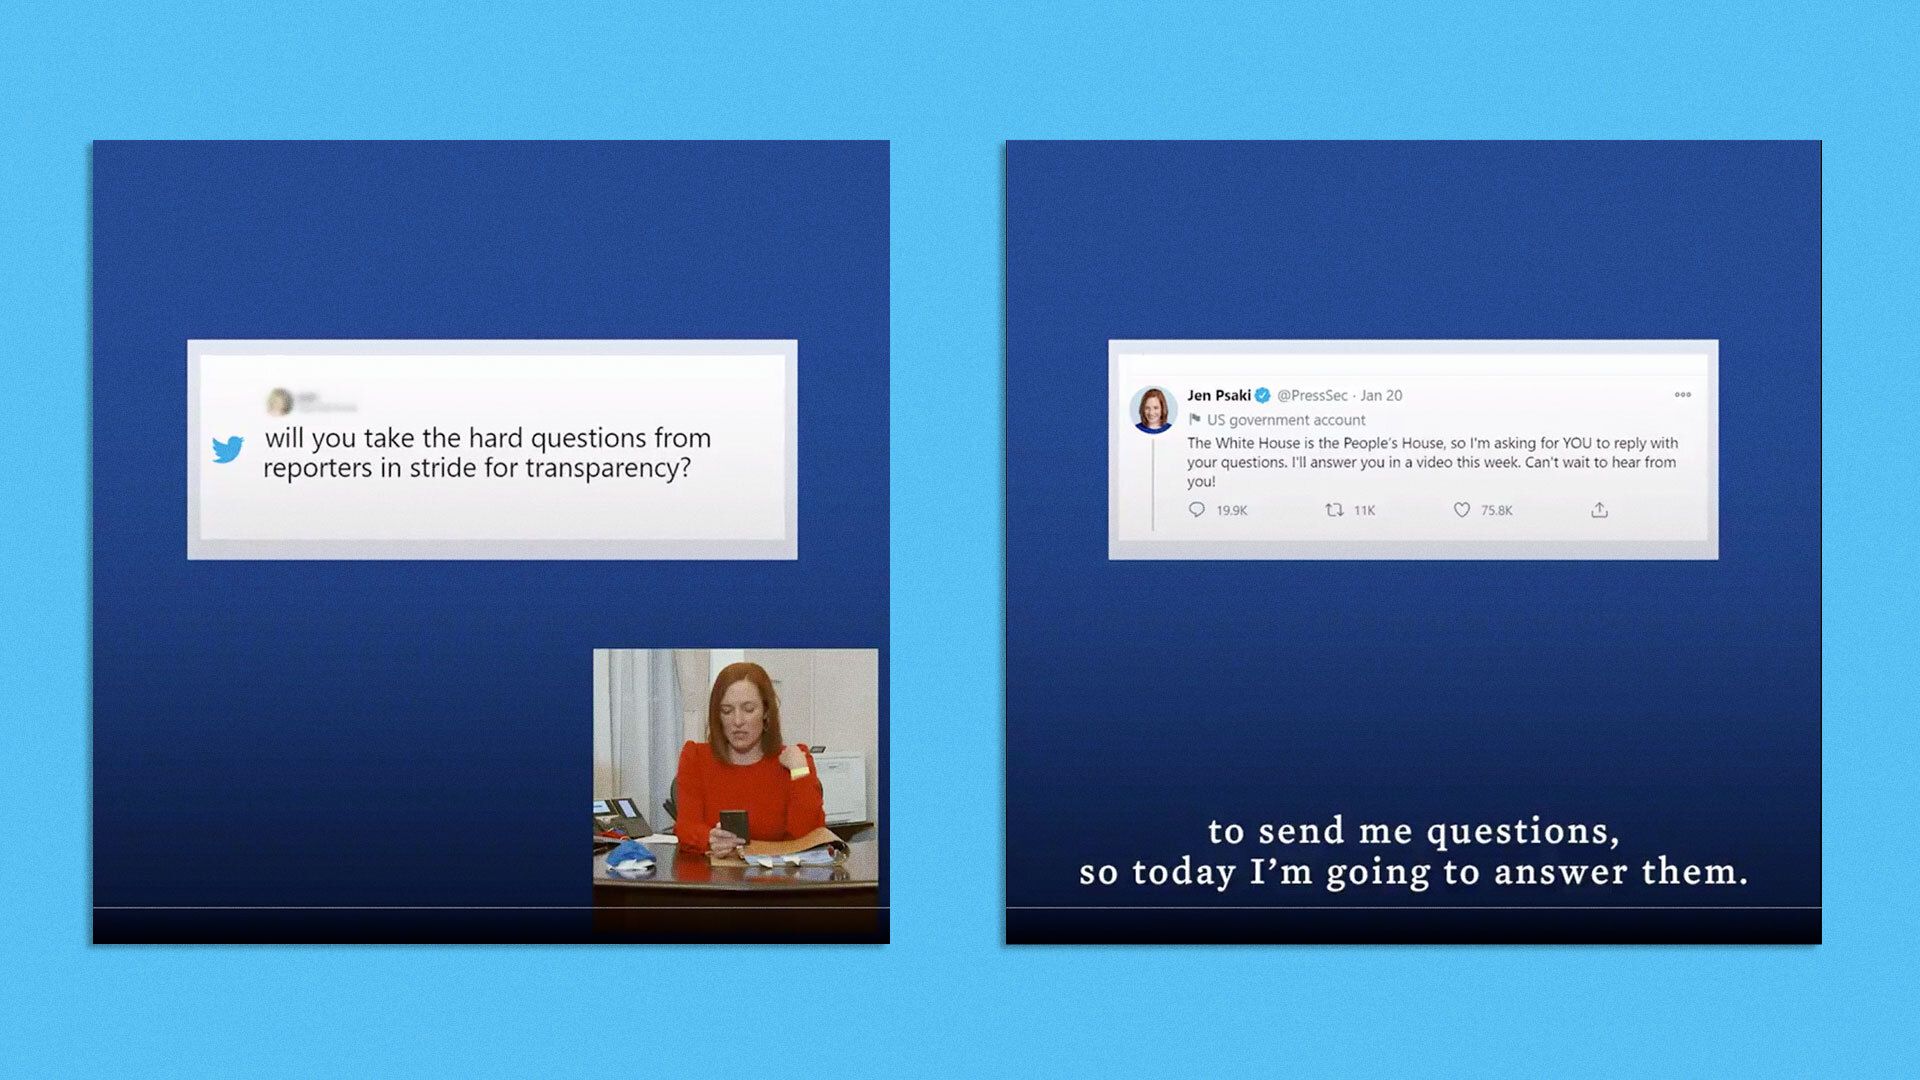 White House Press Secretary Jen Psaki is seen answering public questions via Twitter.